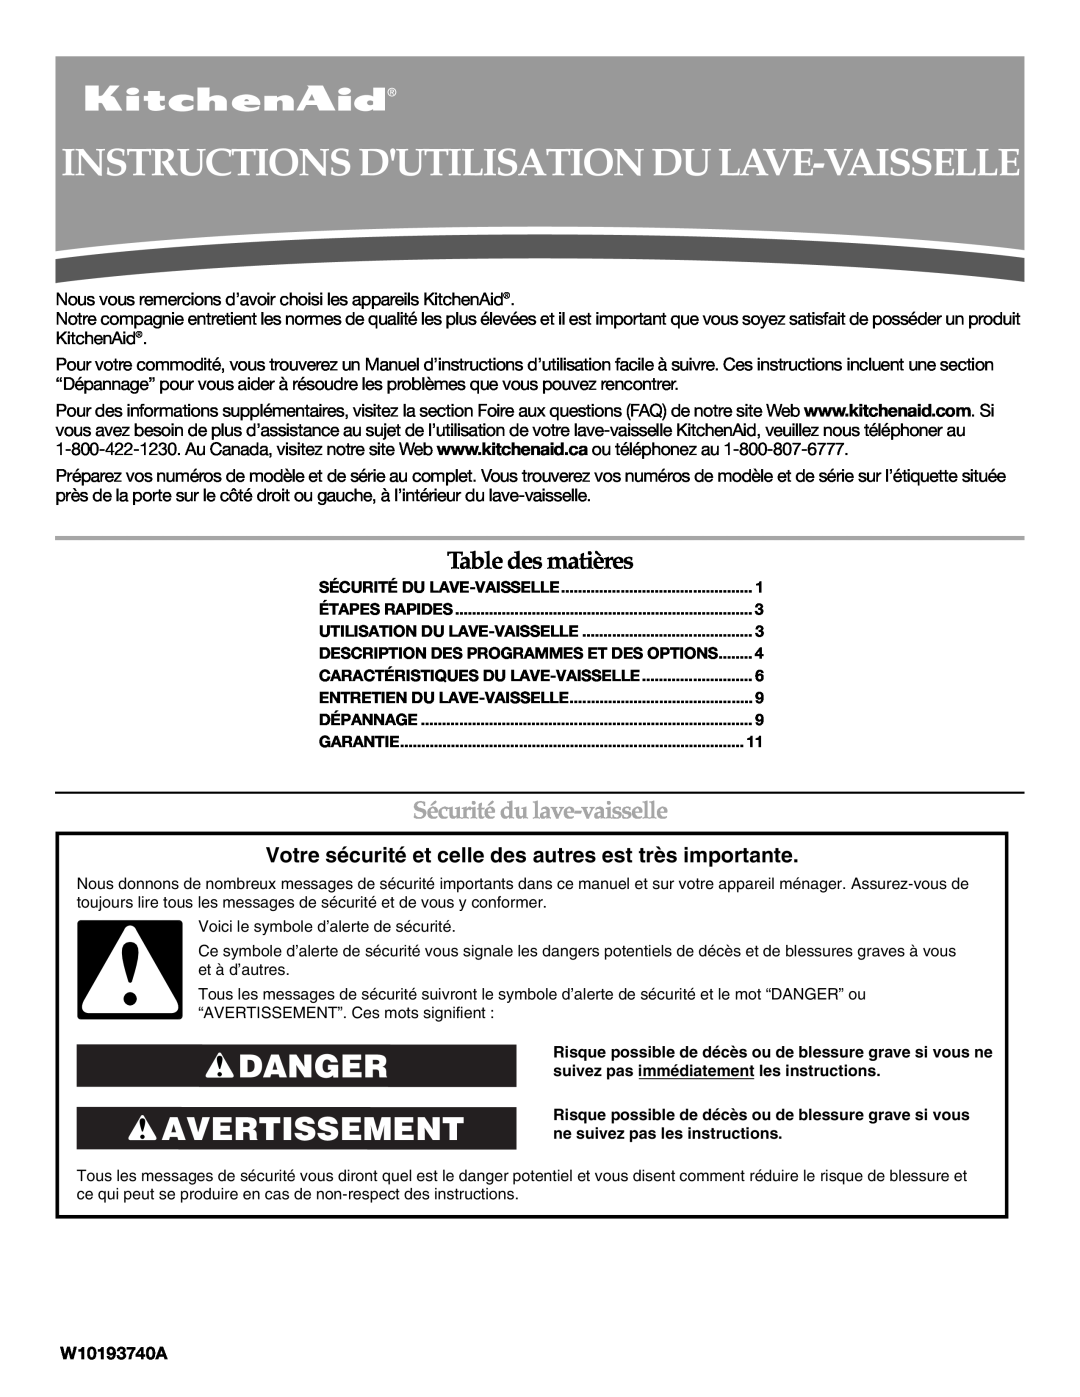 KitchenAid W10193740A, W10193741A Instructions Dutilisation Du Lave-Vaisselle, Danger Avertissement, Table des matières 